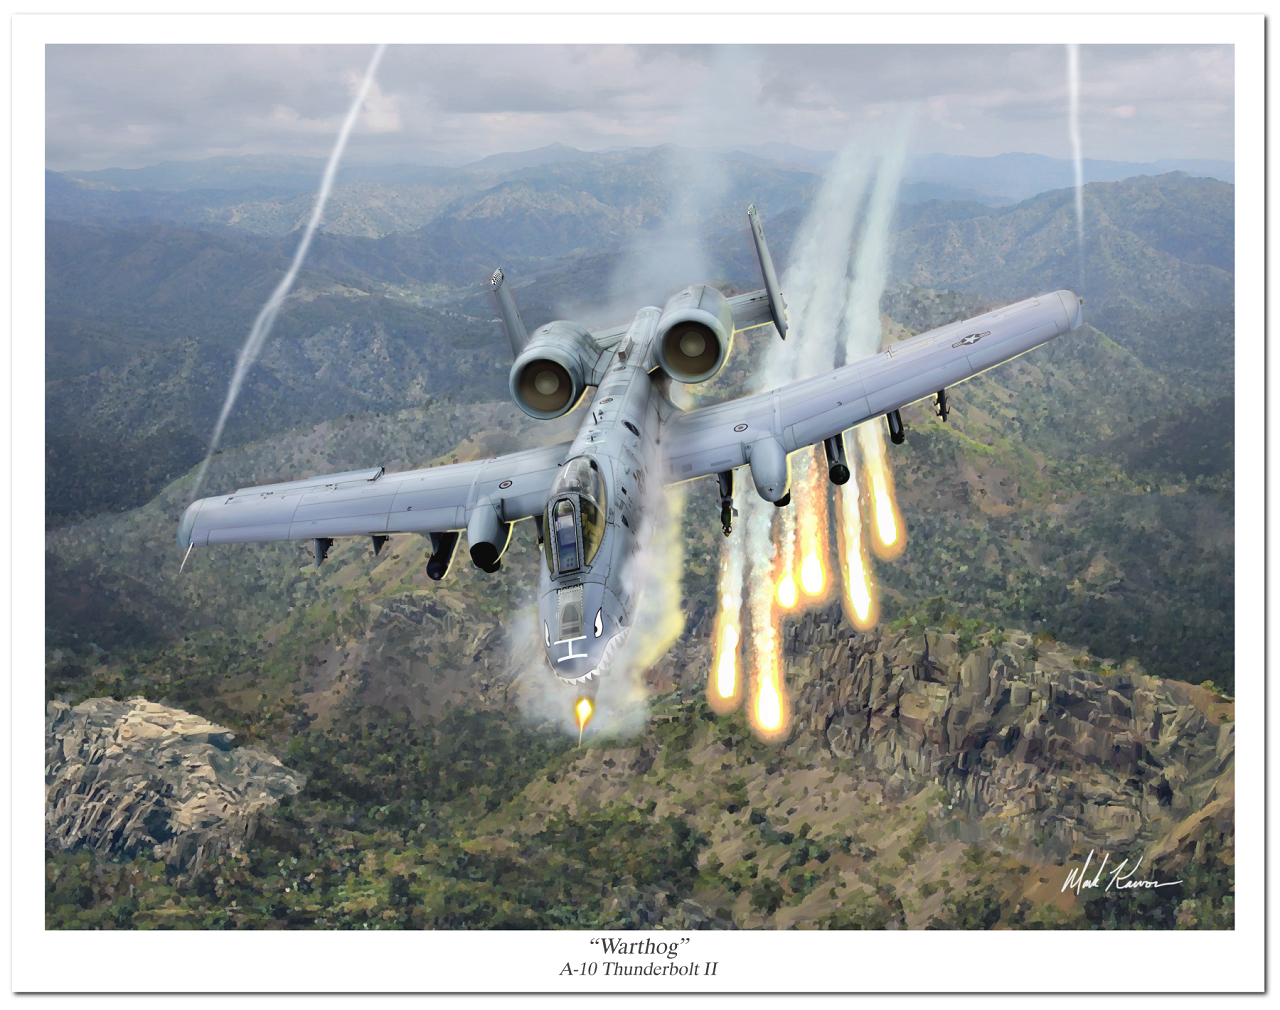 "Warthog" by Mark Karvon, the USAF A-10 Thunderbolt II